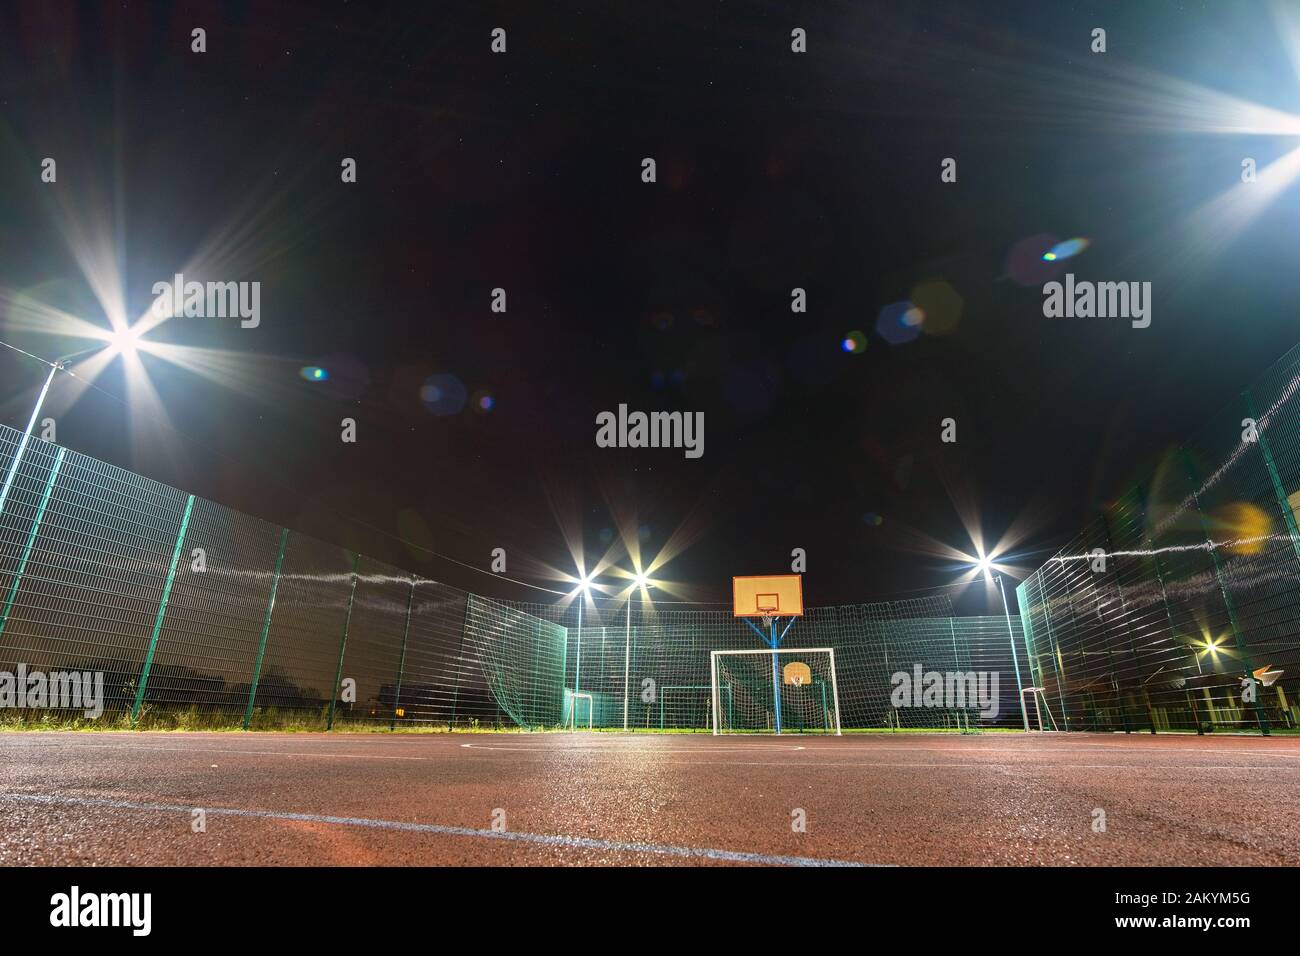 Im freien Mini Fußball- und Basketballplatz mit Ball Gate und Korb mit hoher Schutzzaun hell mit Spotlight Lampen beleuchtet umgeben Stockfoto